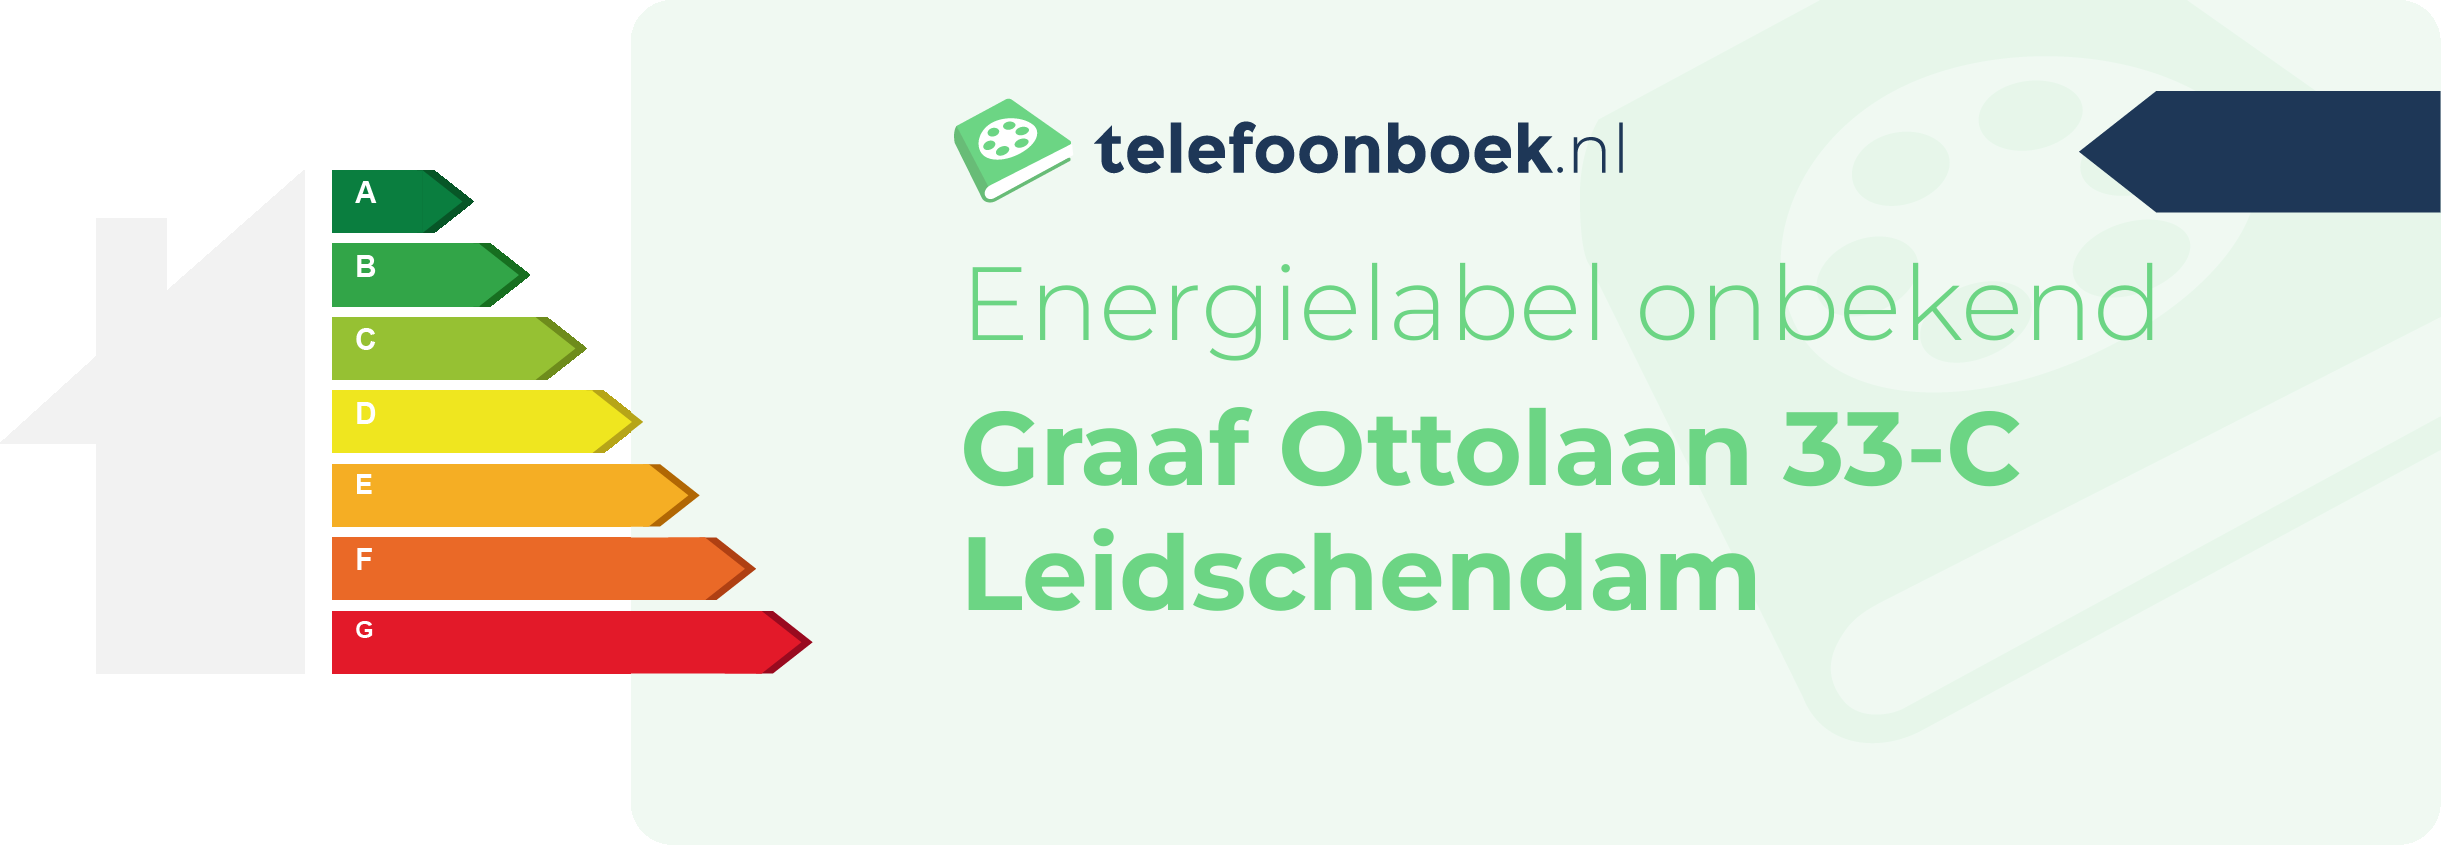 Energielabel Graaf Ottolaan 33-C Leidschendam